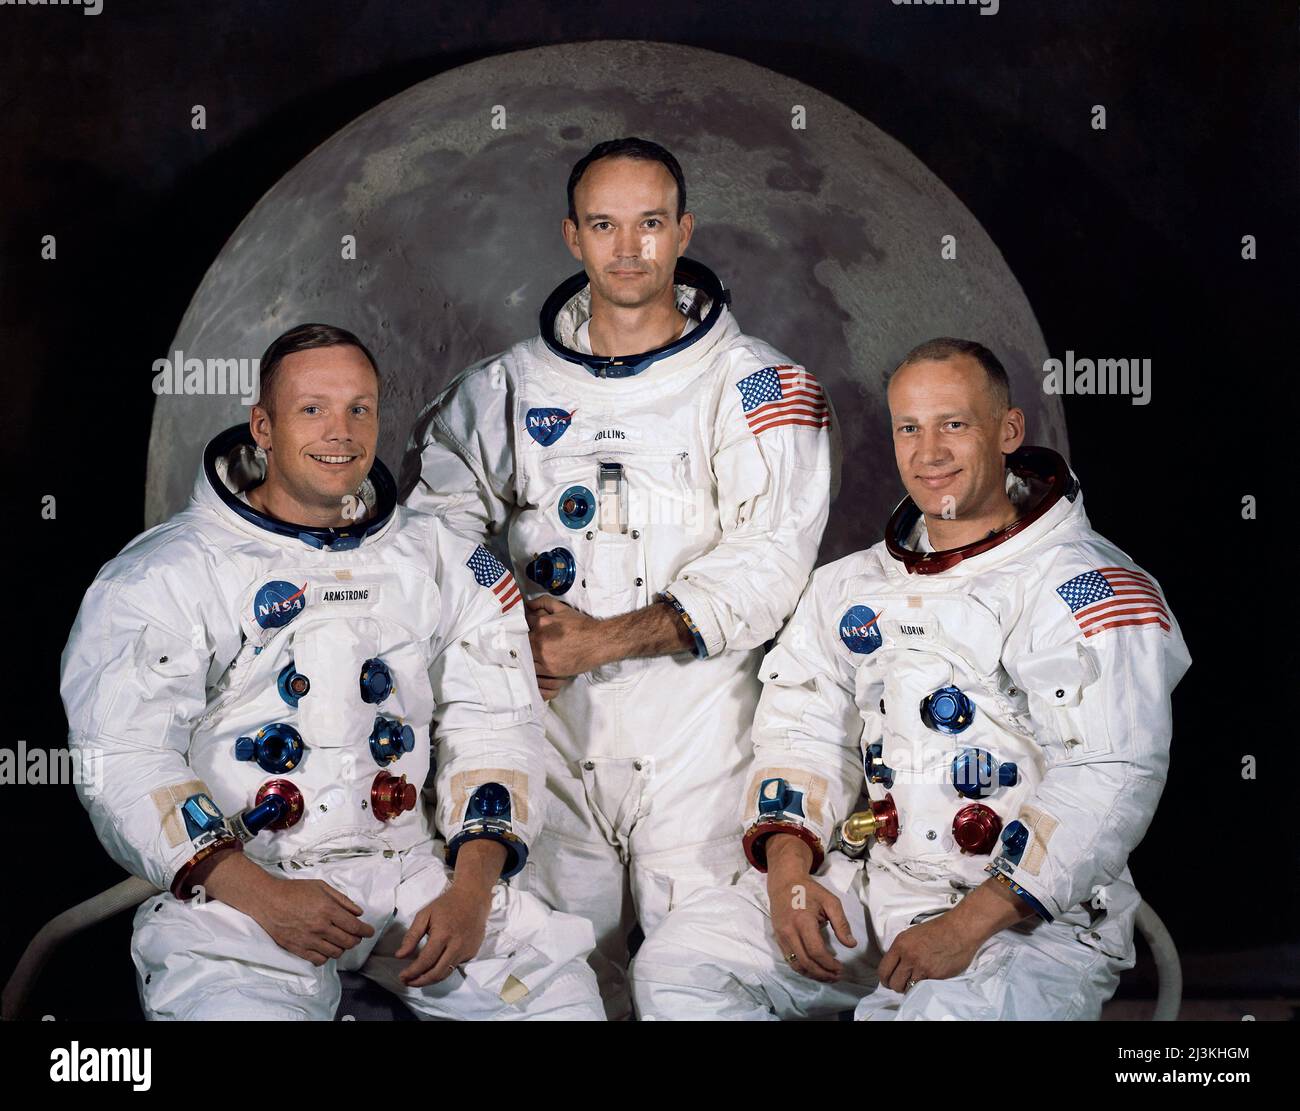 Die Besatzung der Mondlandemission Apollo 11, abgebildet von links nach rechts, Neil Armstrong, Michael Collins und Edwin (Buzz) Aldrin. Apollo 11 war die erste Mission, die auf dem Mond landete, und Neil Armstrong und Buzz Aldrin waren die ersten Männer, die auf dem Mond gingen. Stockfoto